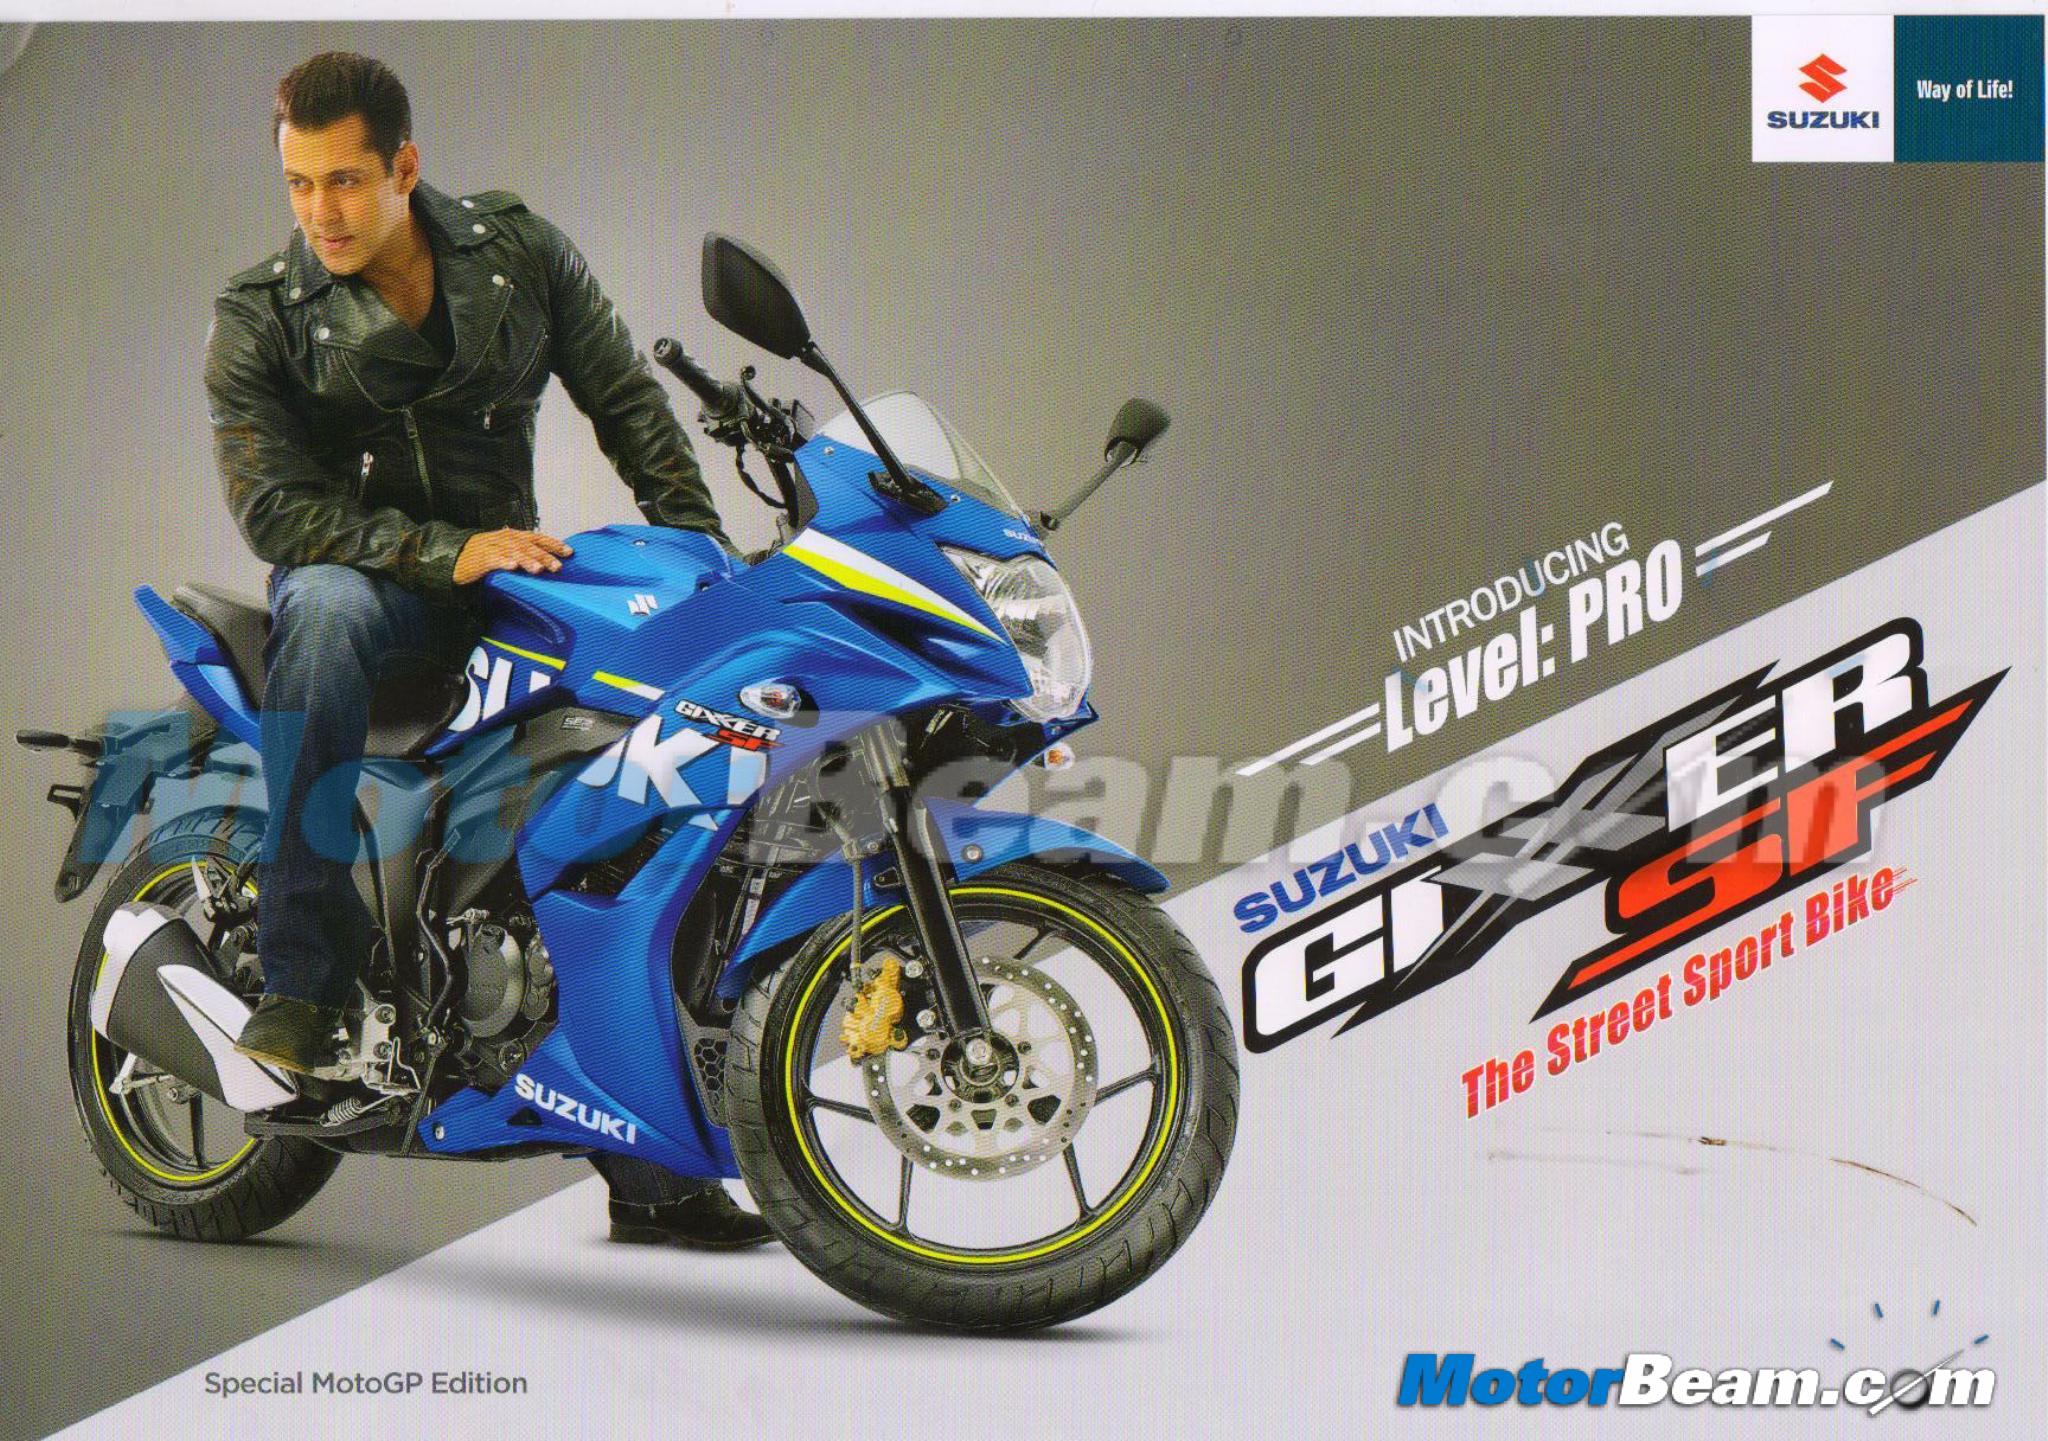 Suzuki Gixxer SF Special MotoGP Edition